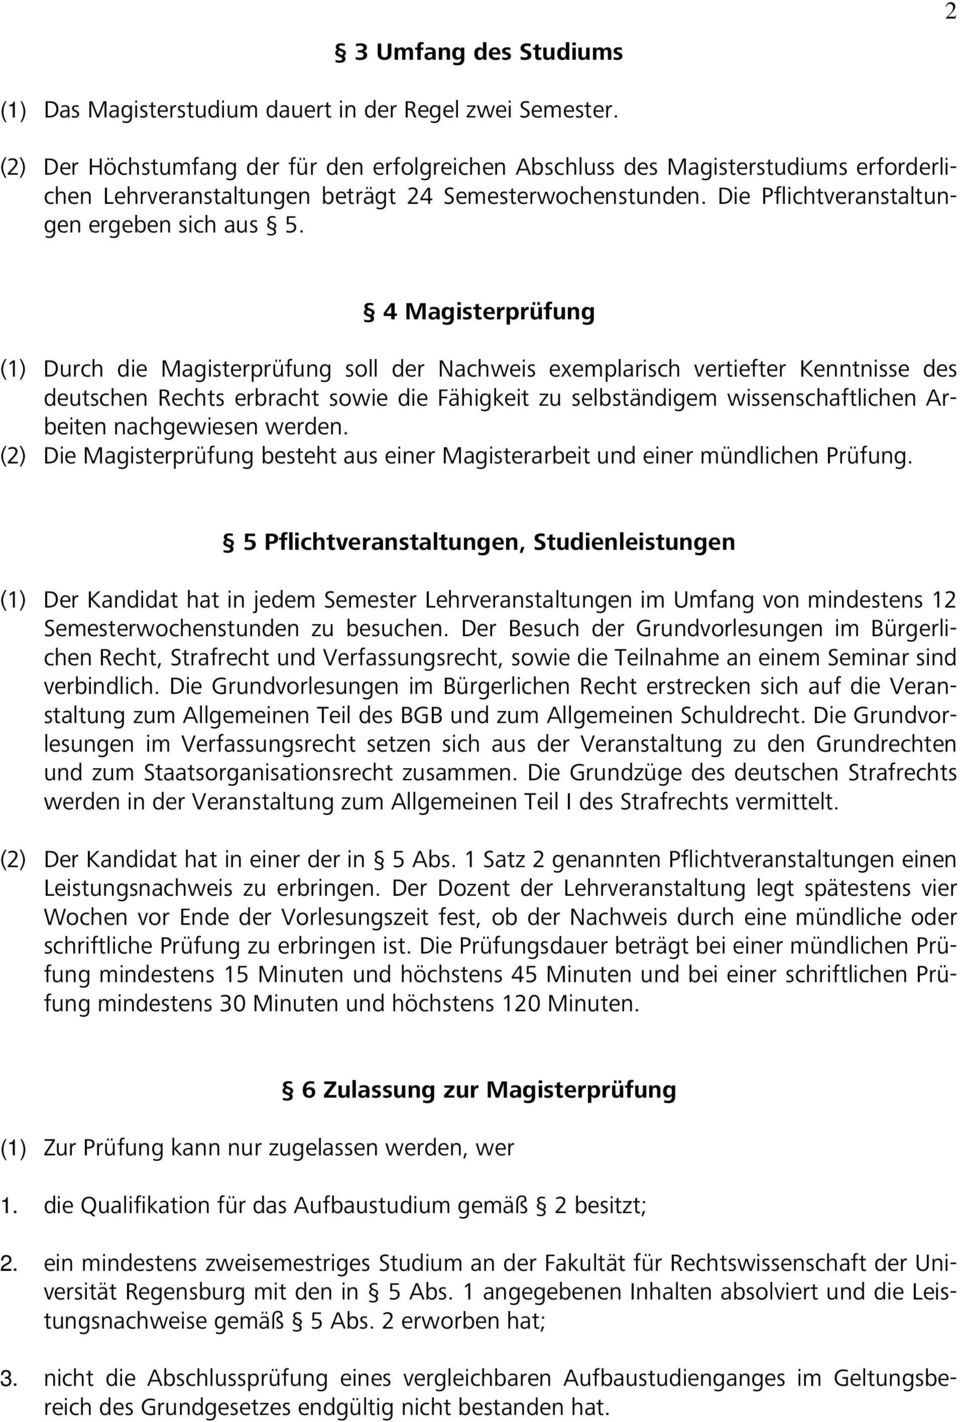 4 Magisterprüfung (1) Durch die Magisterprüfung soll der Nachweis exemplarisch vertiefter Kenntnisse des deutschen Rechts erbracht sowie die Fähigkeit zu selbständigem wissenschaftlichen Arbeiten